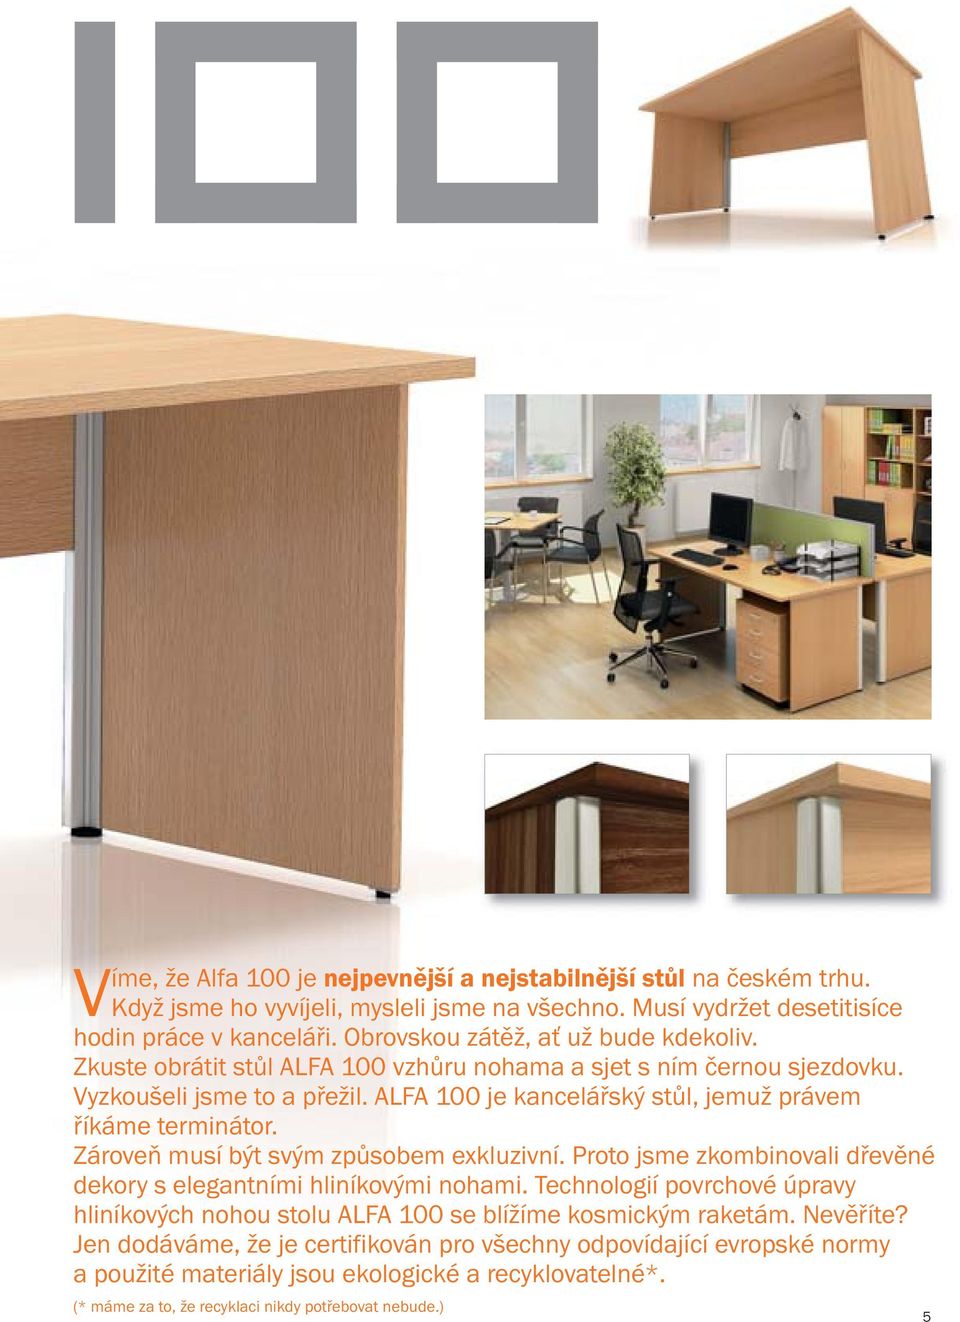 ALFA 100 je kancelářský stůl, jemuž právem říkáme terminátor. Zároveň musí být svým způsobem exkluzivní. Proto jsme zkombinovali dřevěné dekory s elegantními hliníkovými nohami.